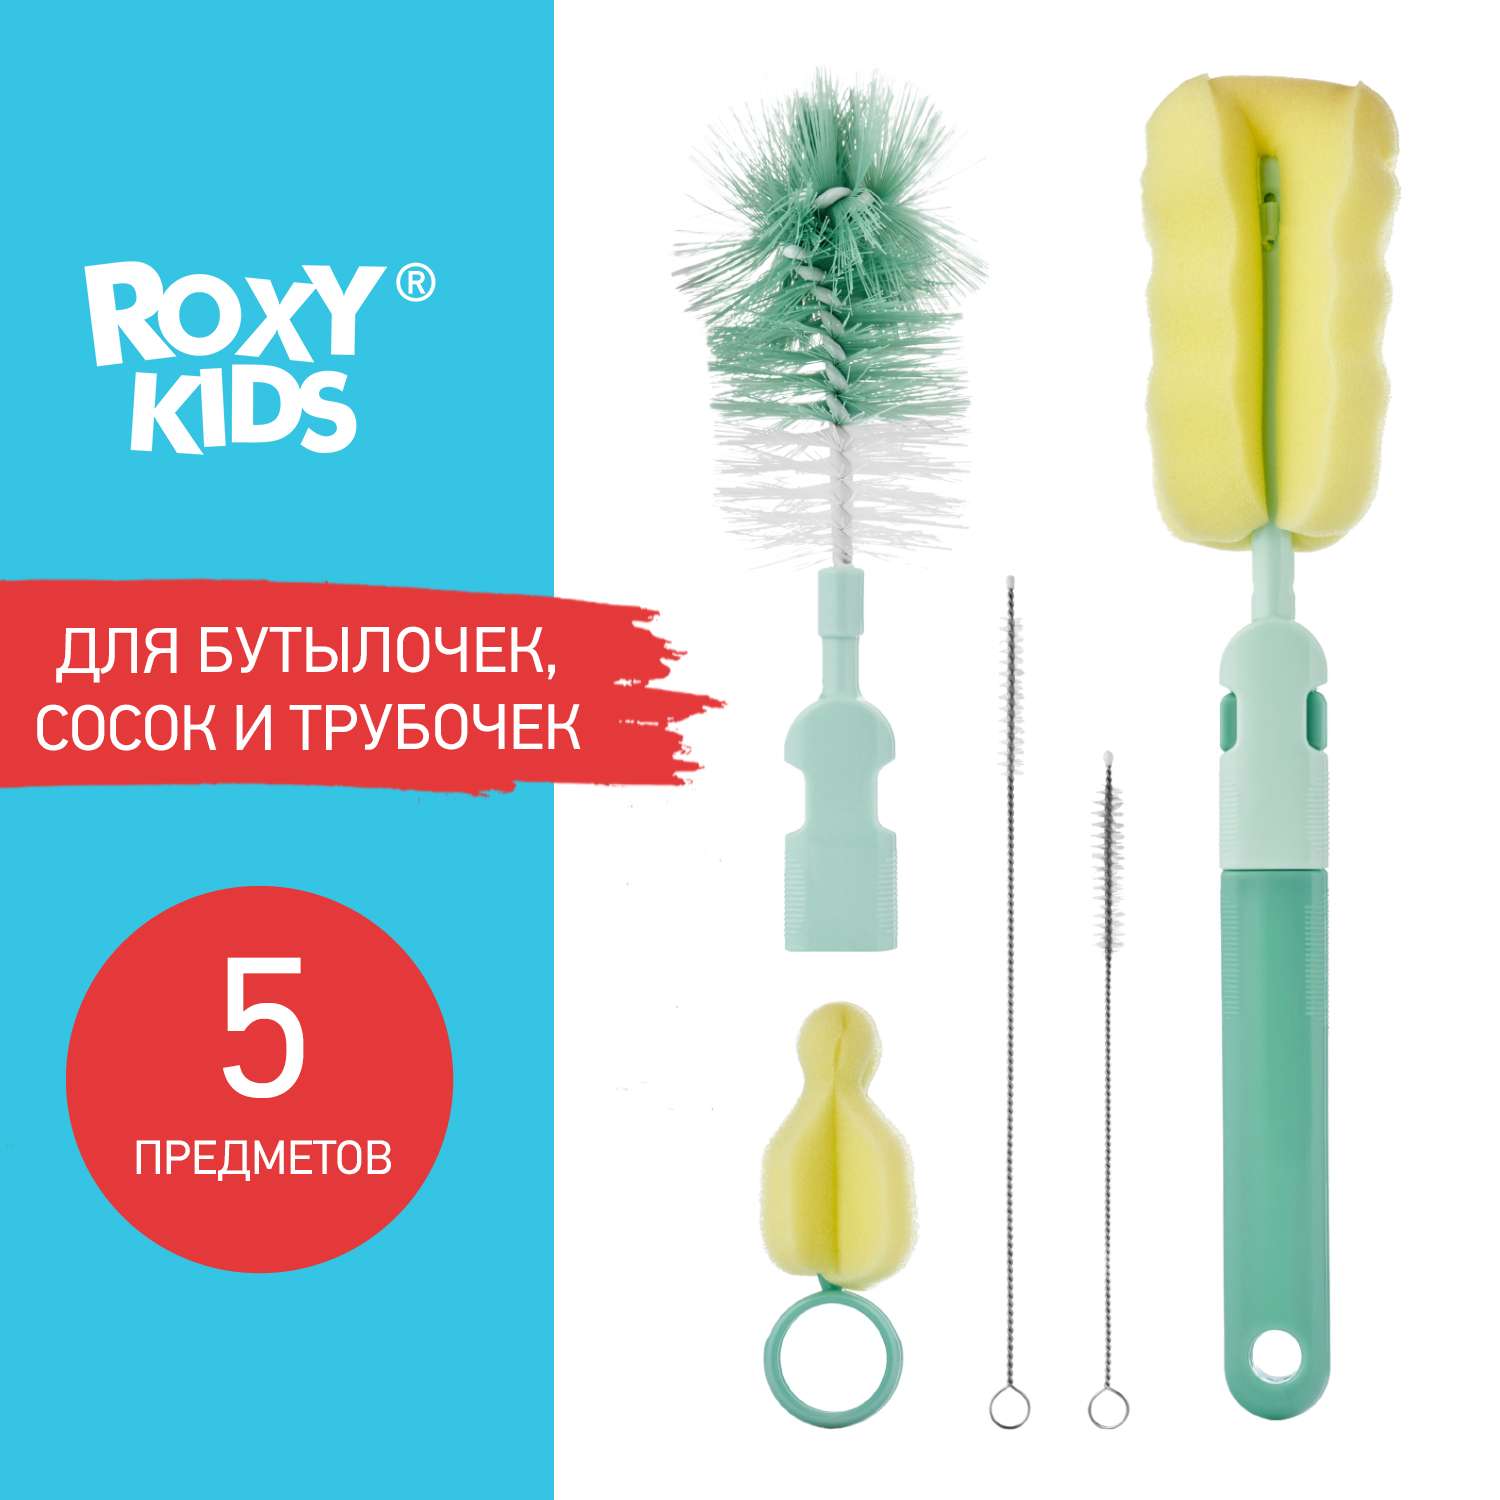 Набор ROXY-KIDS щеток и ершиков для мытья бутылочек и сосок - фото 1